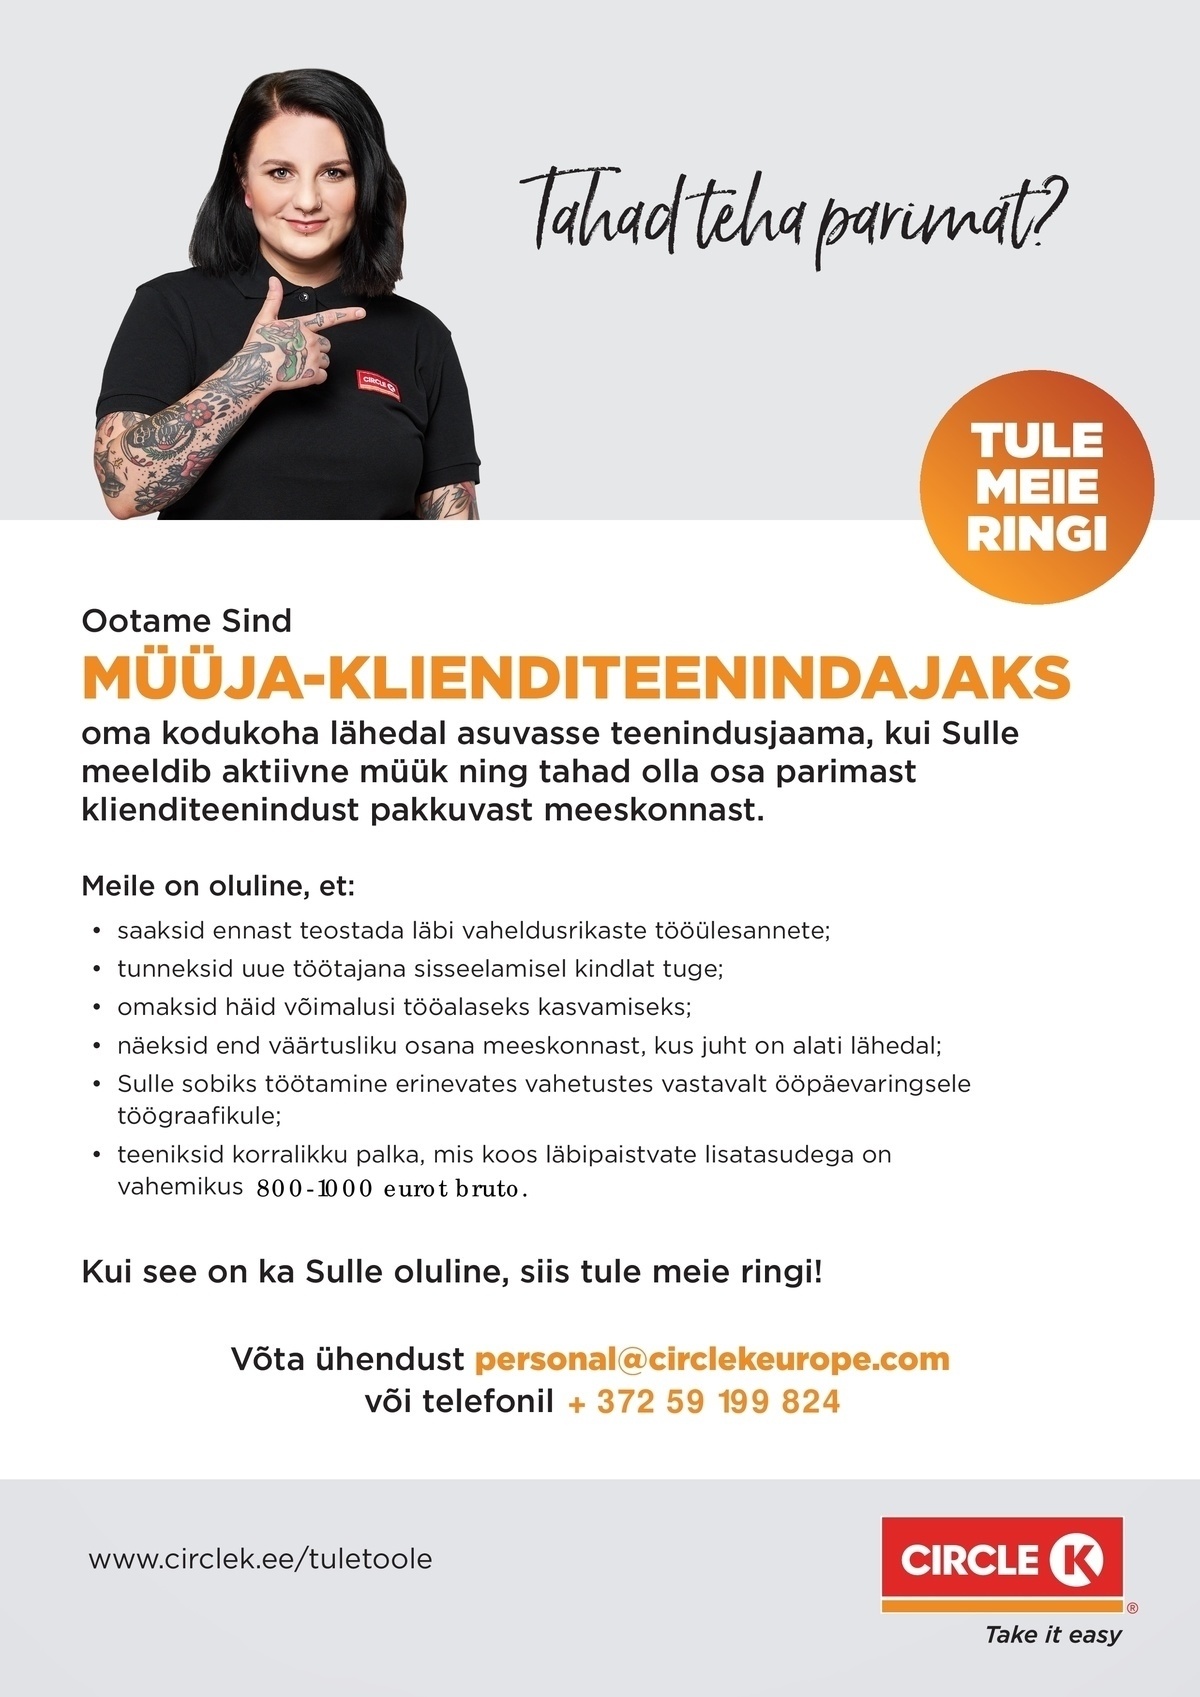 Circle K Eesti AS Müüja- klienditeenindaja ja suveteenindaja Tartu teenindusjaamadesse